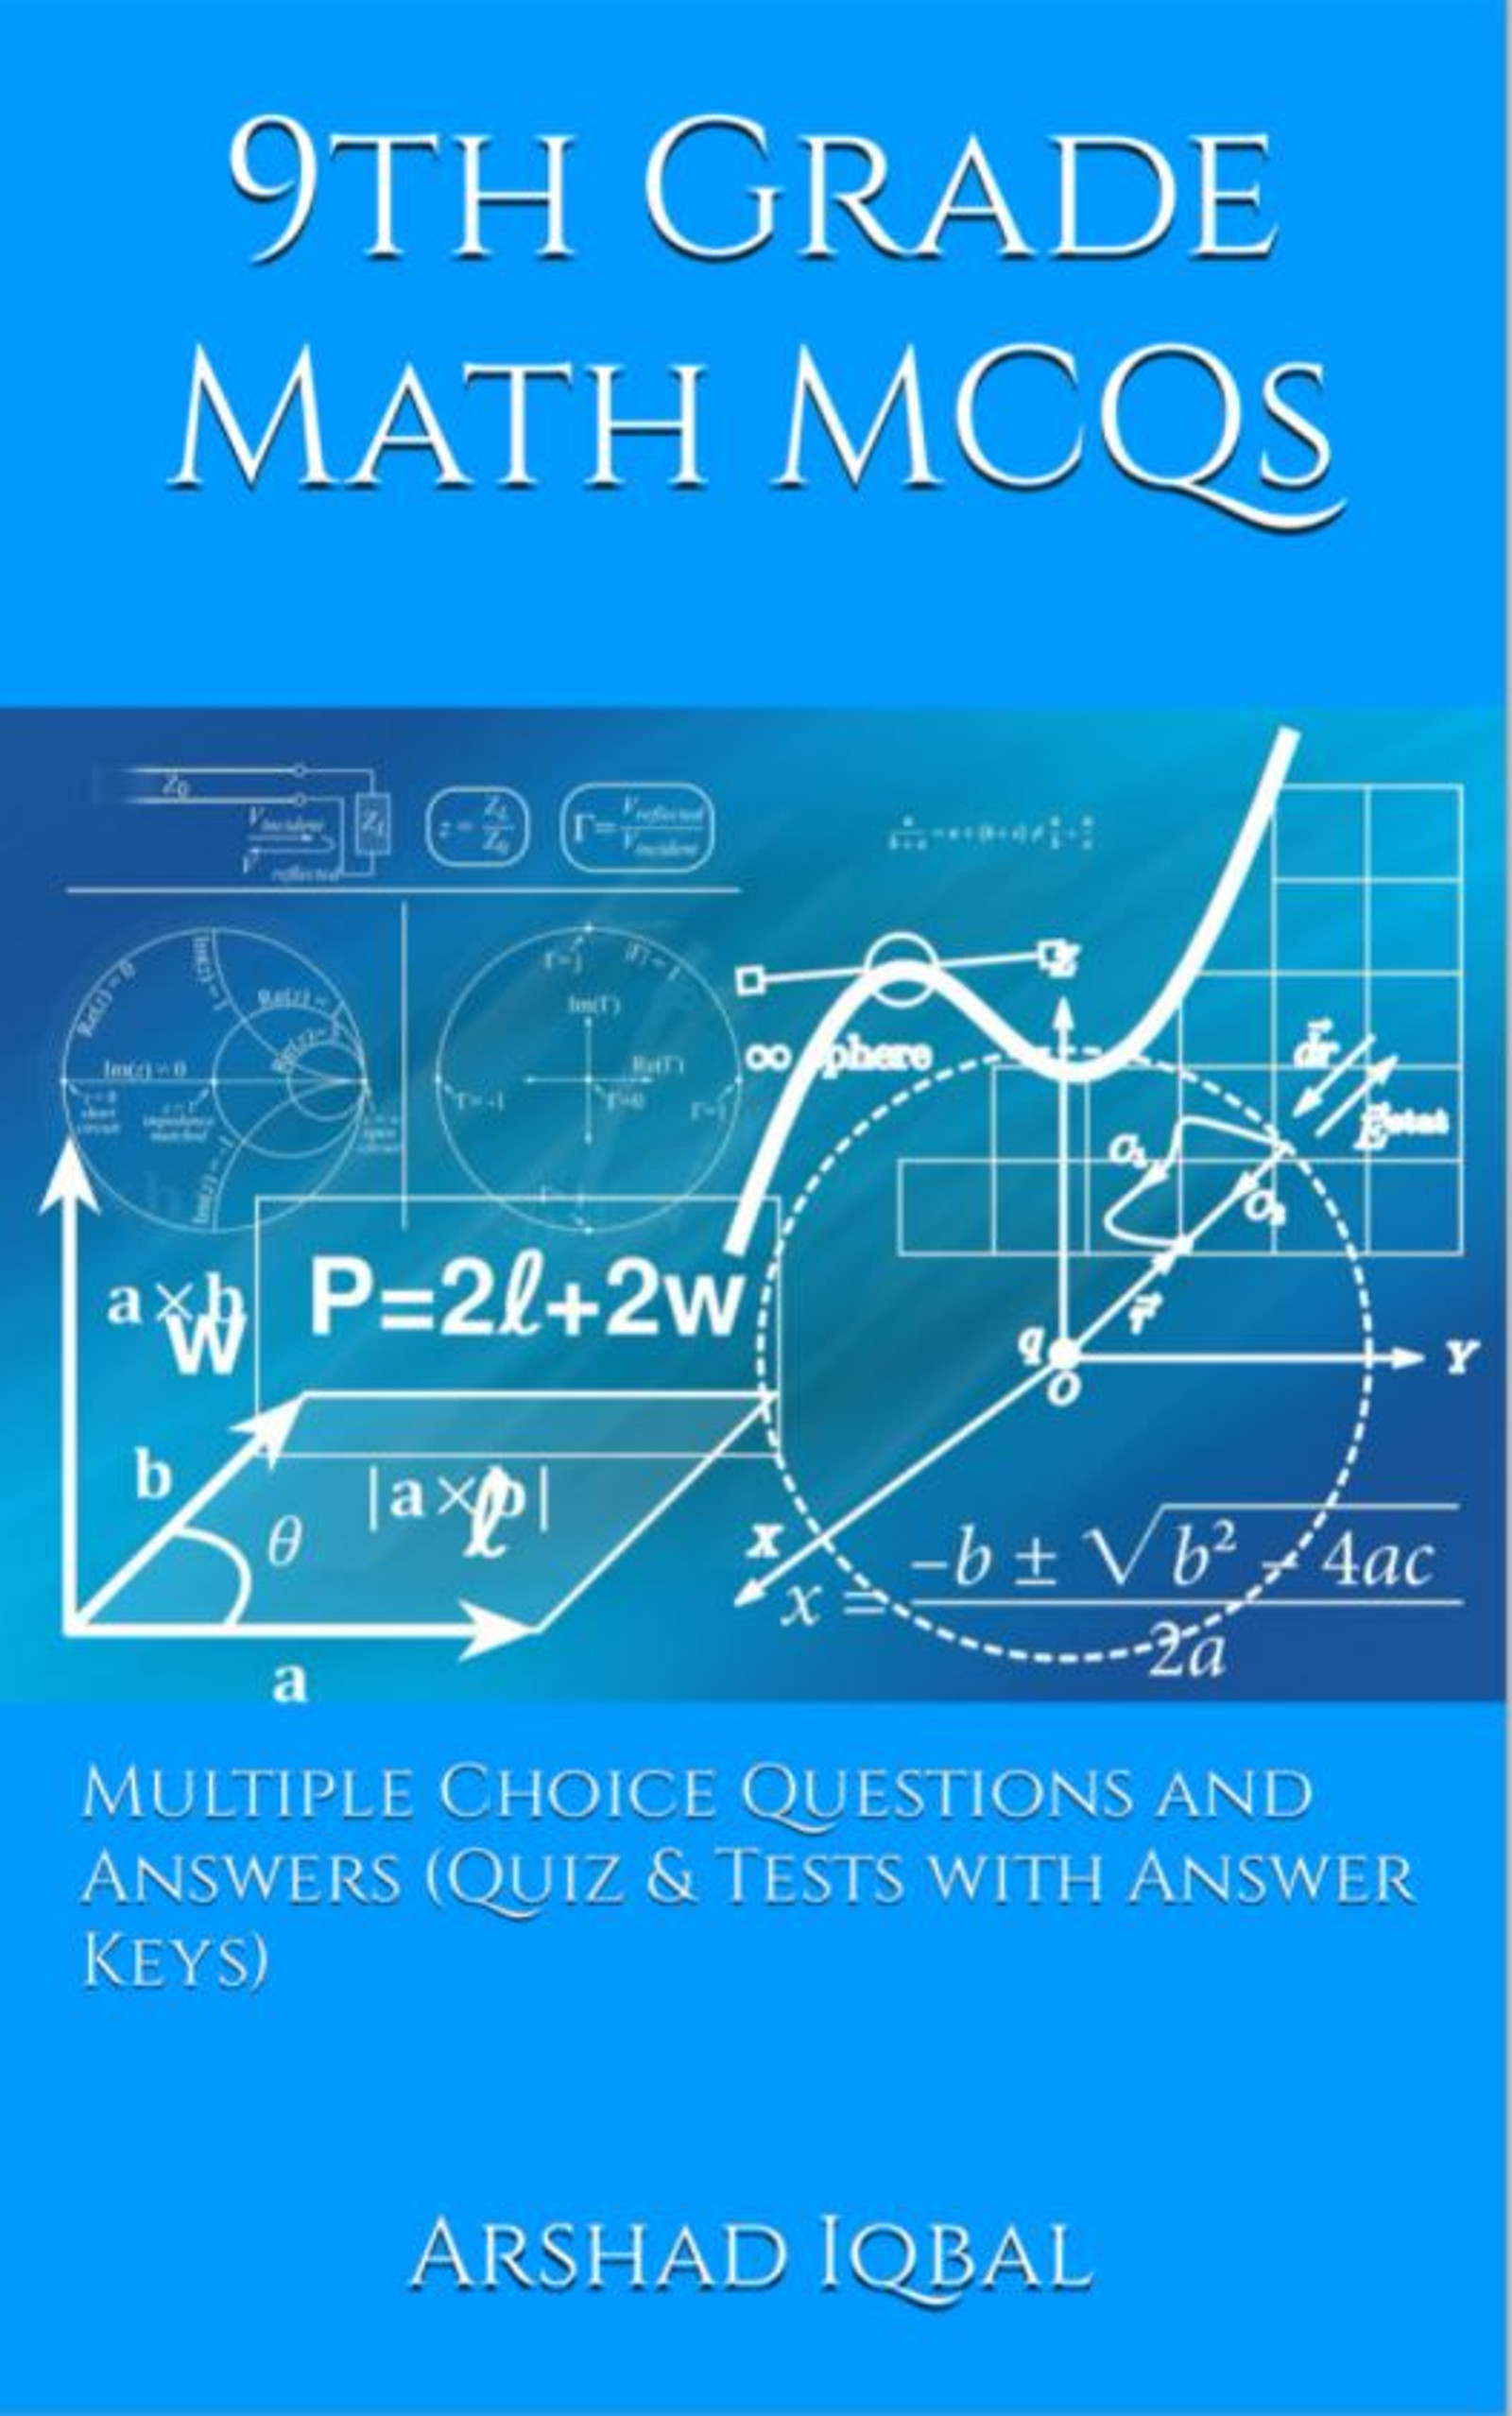 9th Grade Math MCQ Book PDF